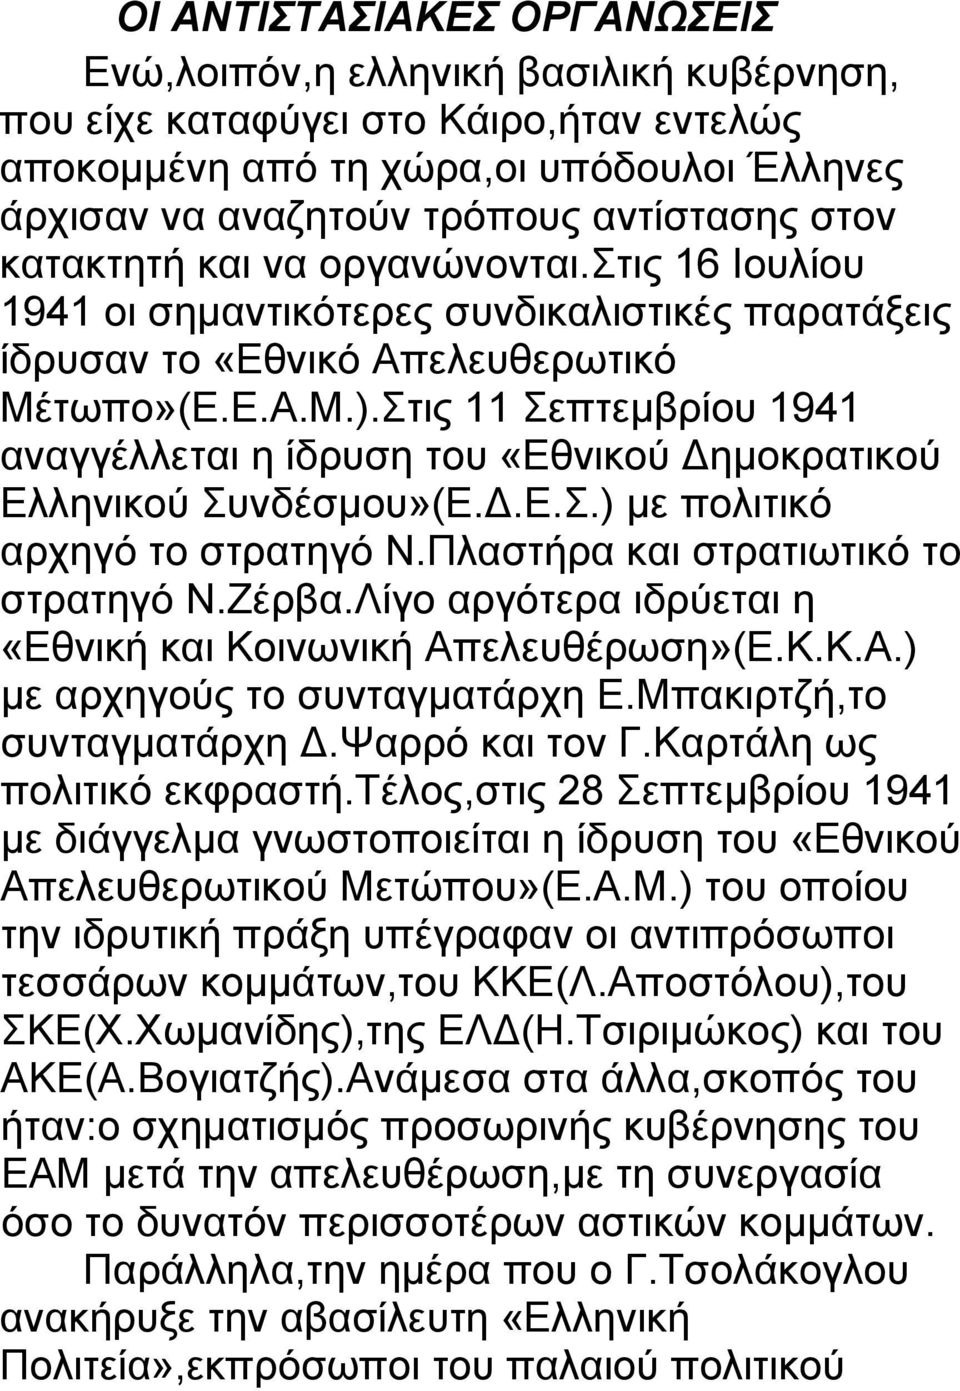 Στις 11 Σεπτεμβρίου 1941 αναγγέλλεται η ίδρυση του «Εθνικού Δημοκρατικού Ελληνικού Συνδέσμου»(Ε.Δ.Ε.Σ.) με πολιτικό αρχηγό το στρατηγό Ν.Πλαστήρα και στρατιωτικό το στρατηγό Ν.Ζέρβα.